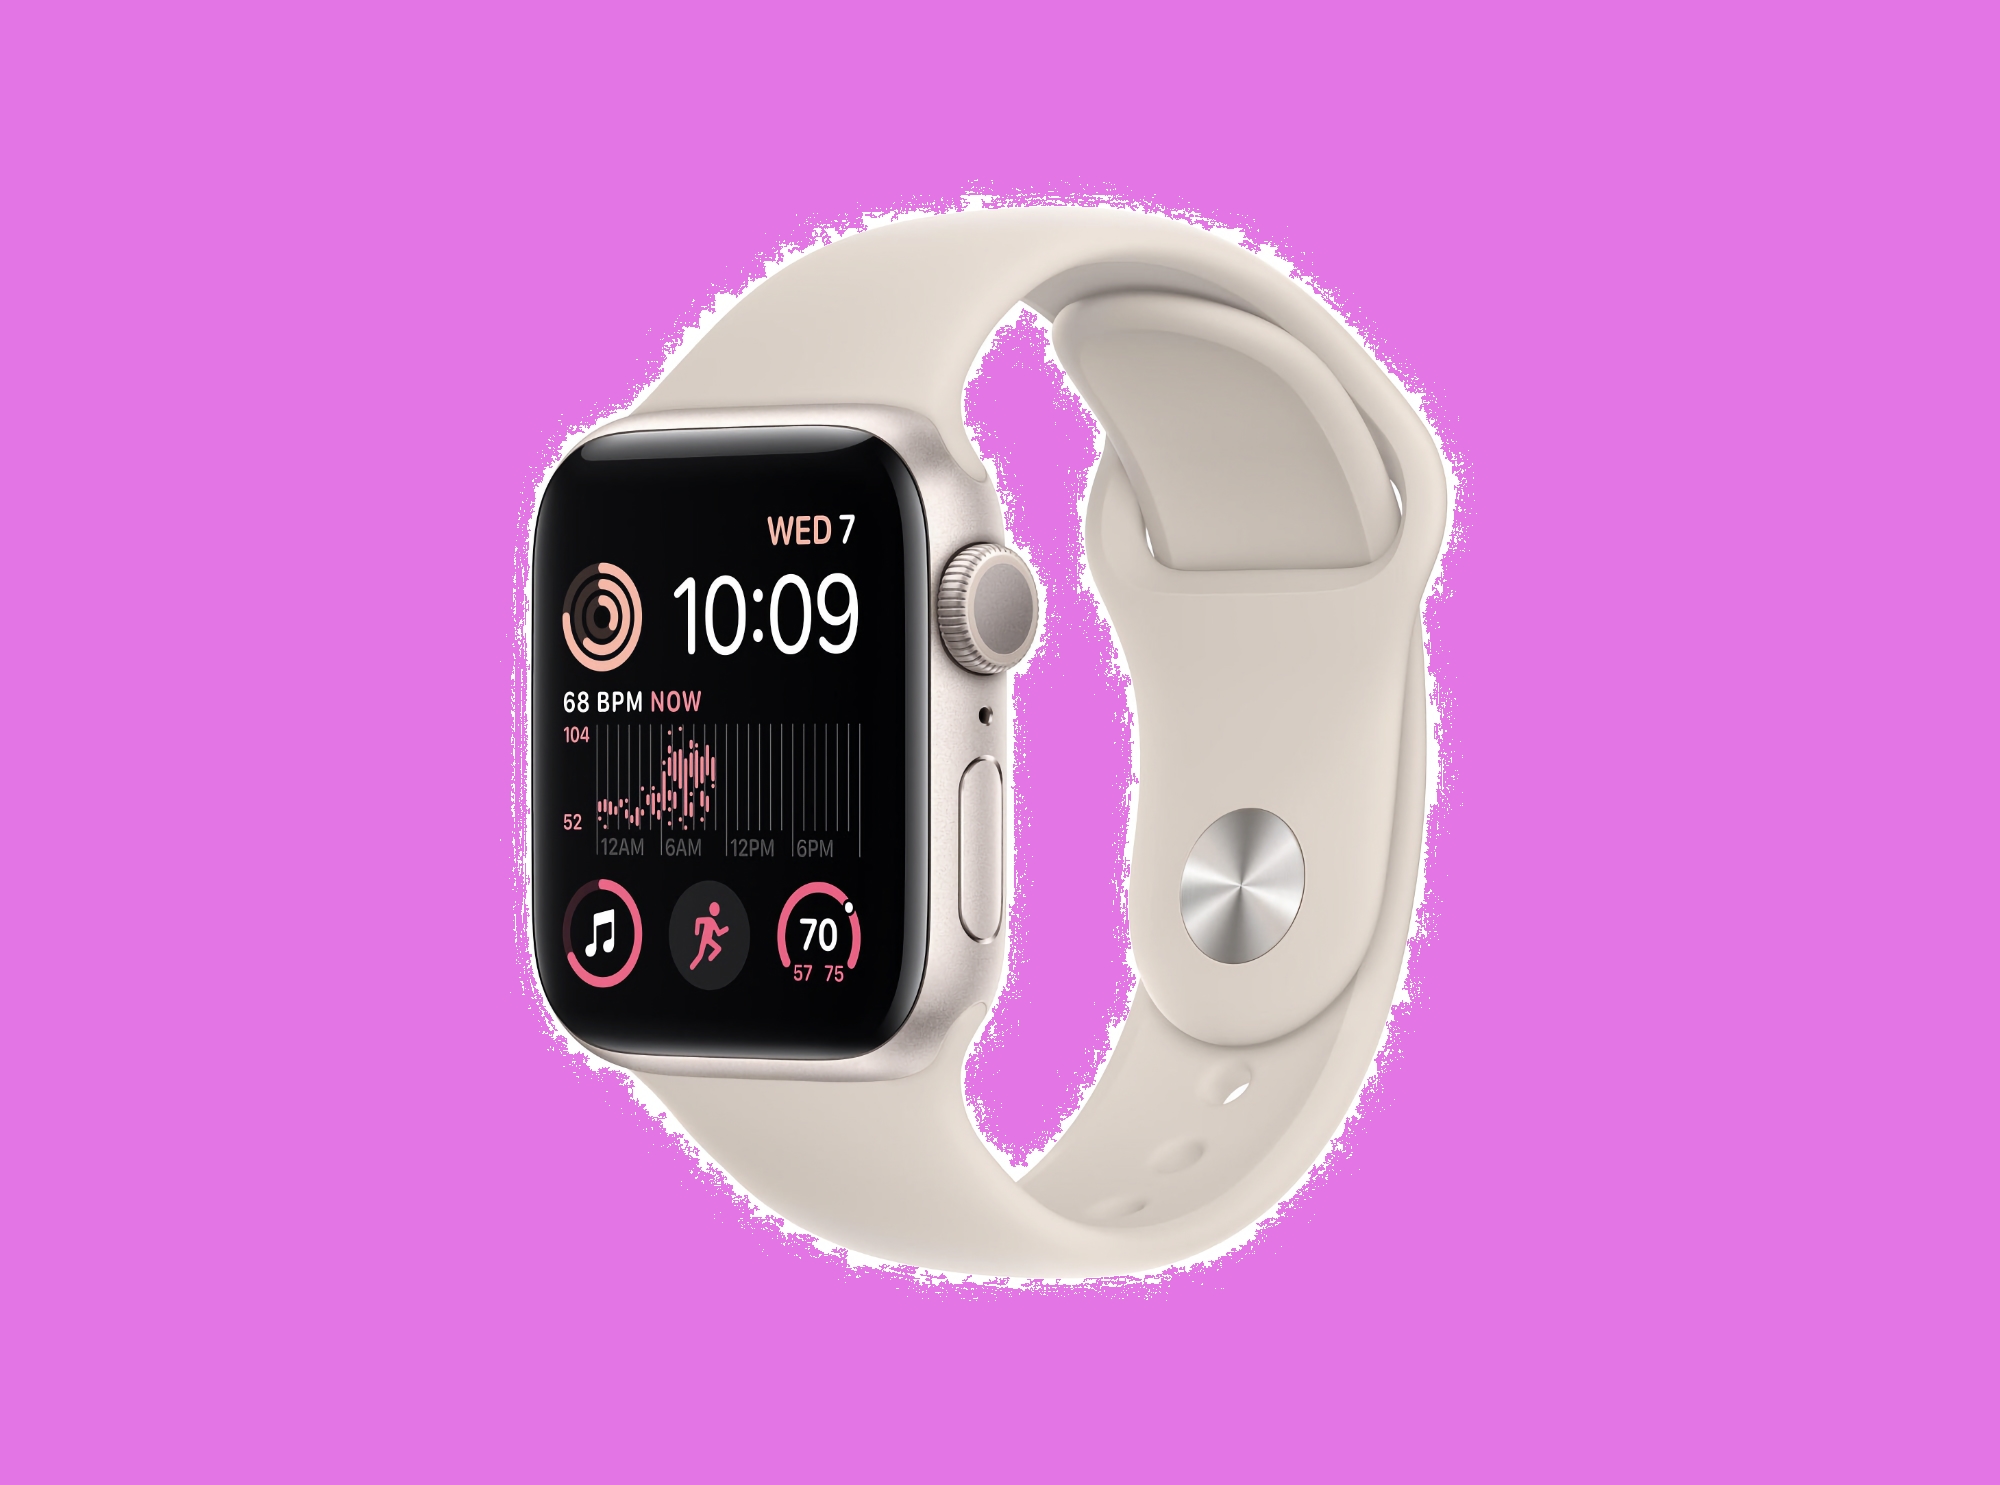 L'Apple Watch SE 2 avec boîtier de 44 mm et prise en charge des réseaux mobiles est disponible en vente sur Amazon avec une remise de 89 $.